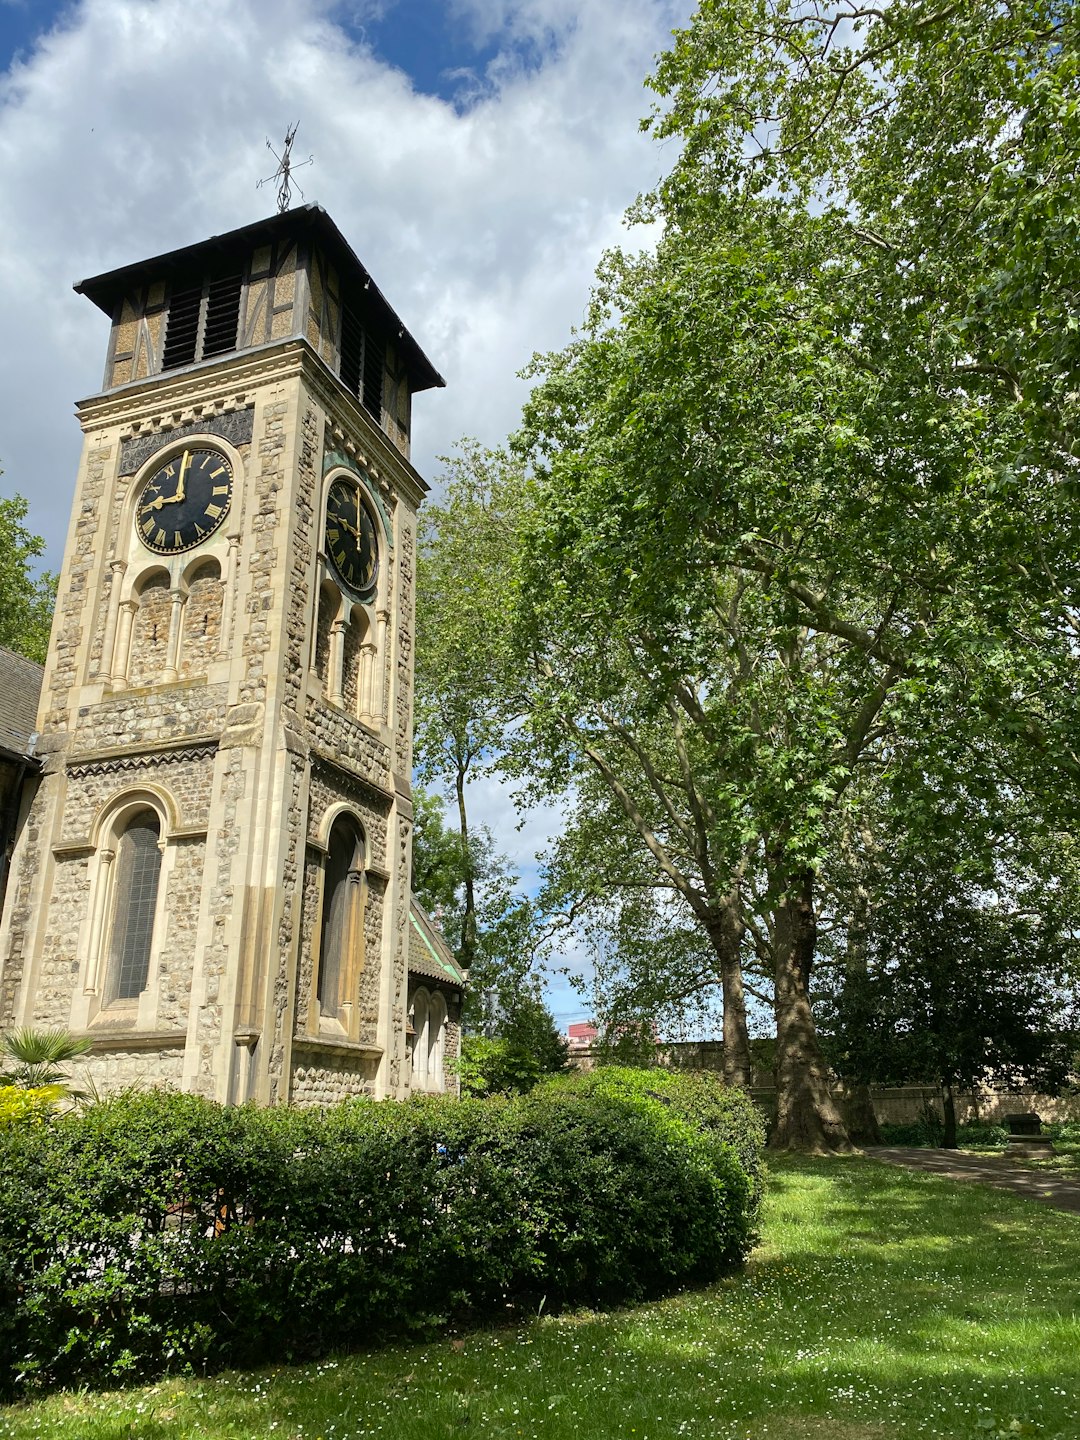 Church photo spot 86 Pancras Road Kensington Gardens